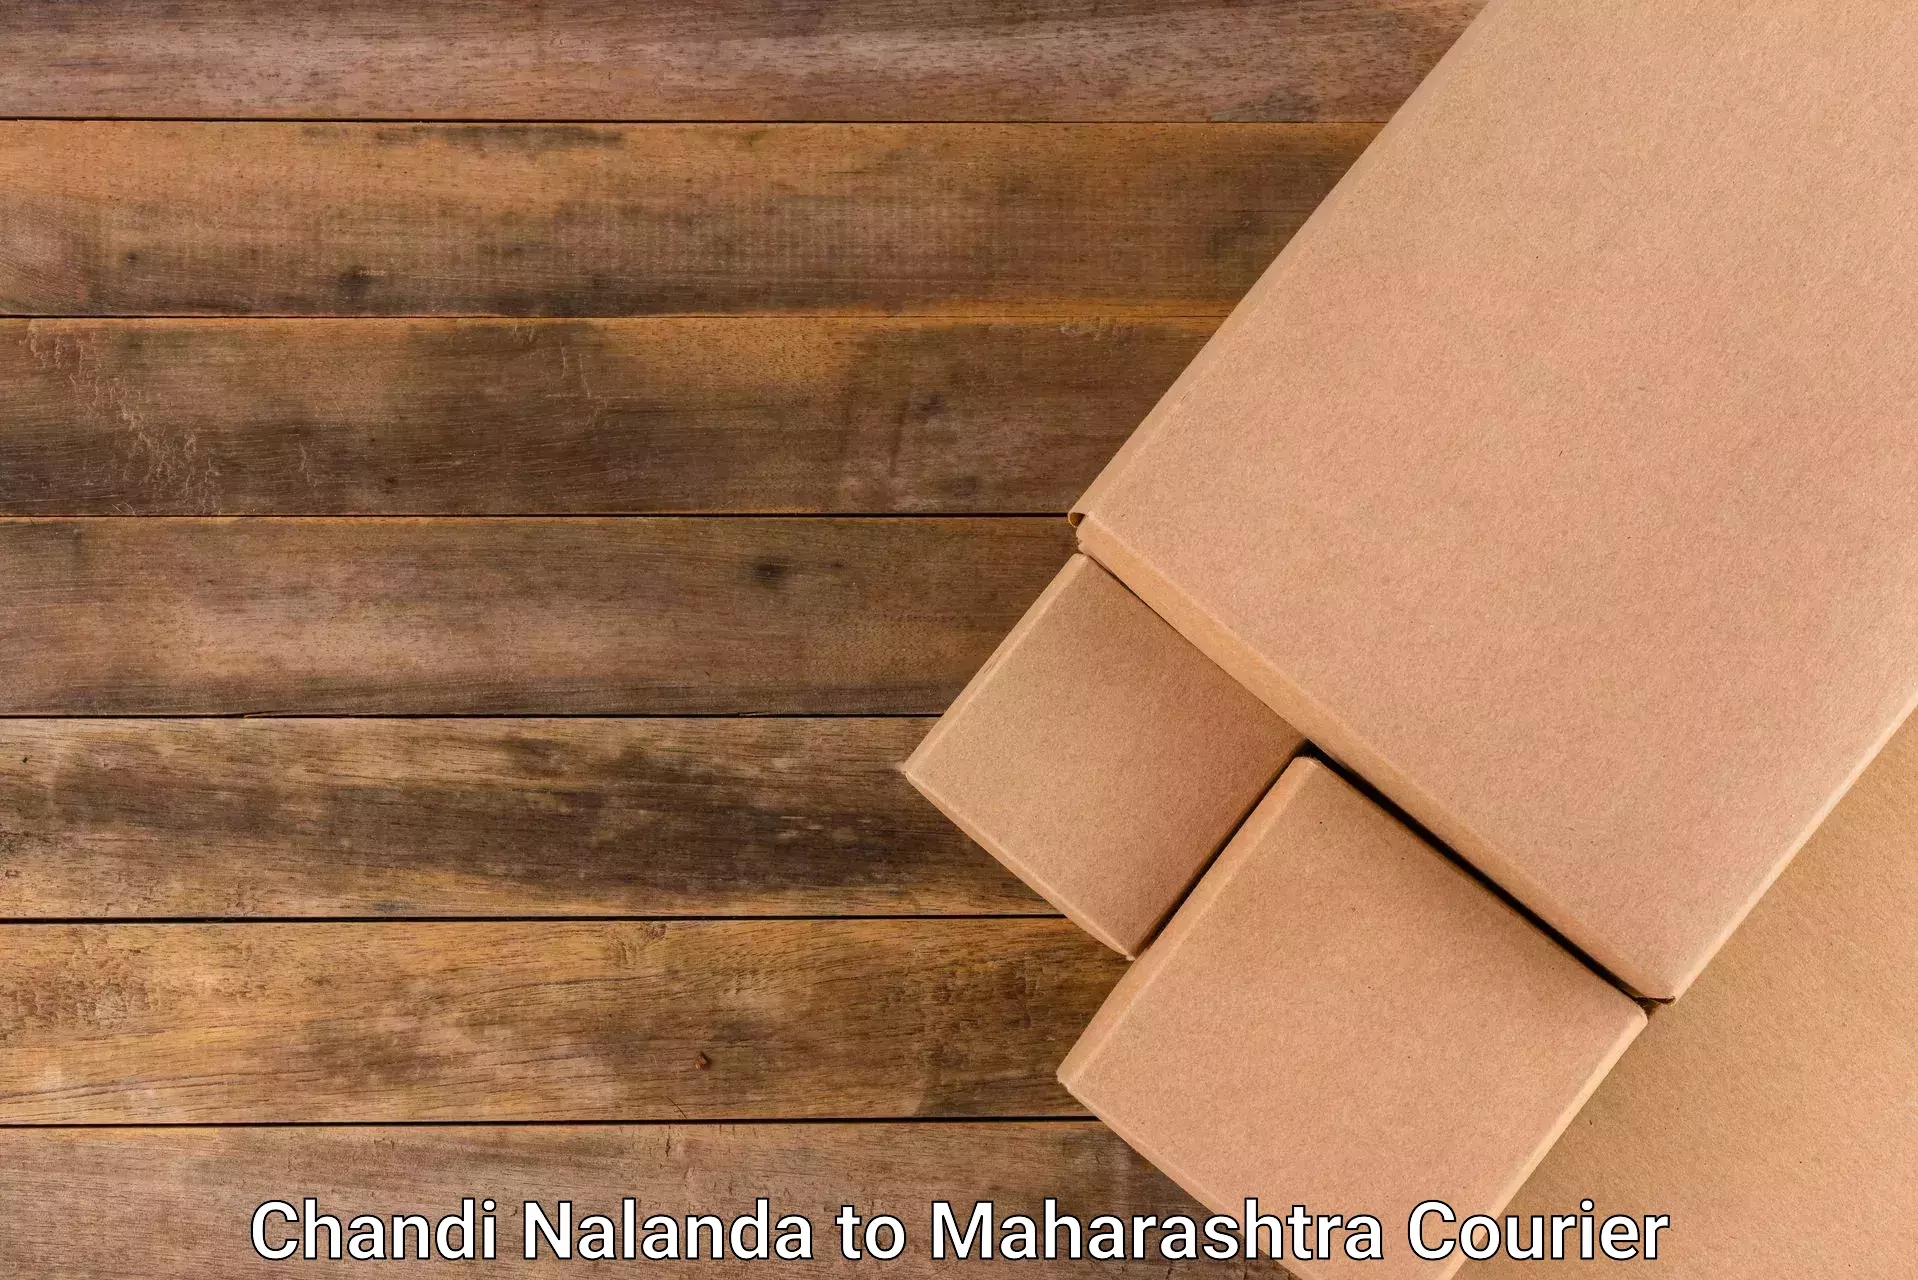 Nationwide parcel services Chandi Nalanda to Amravati